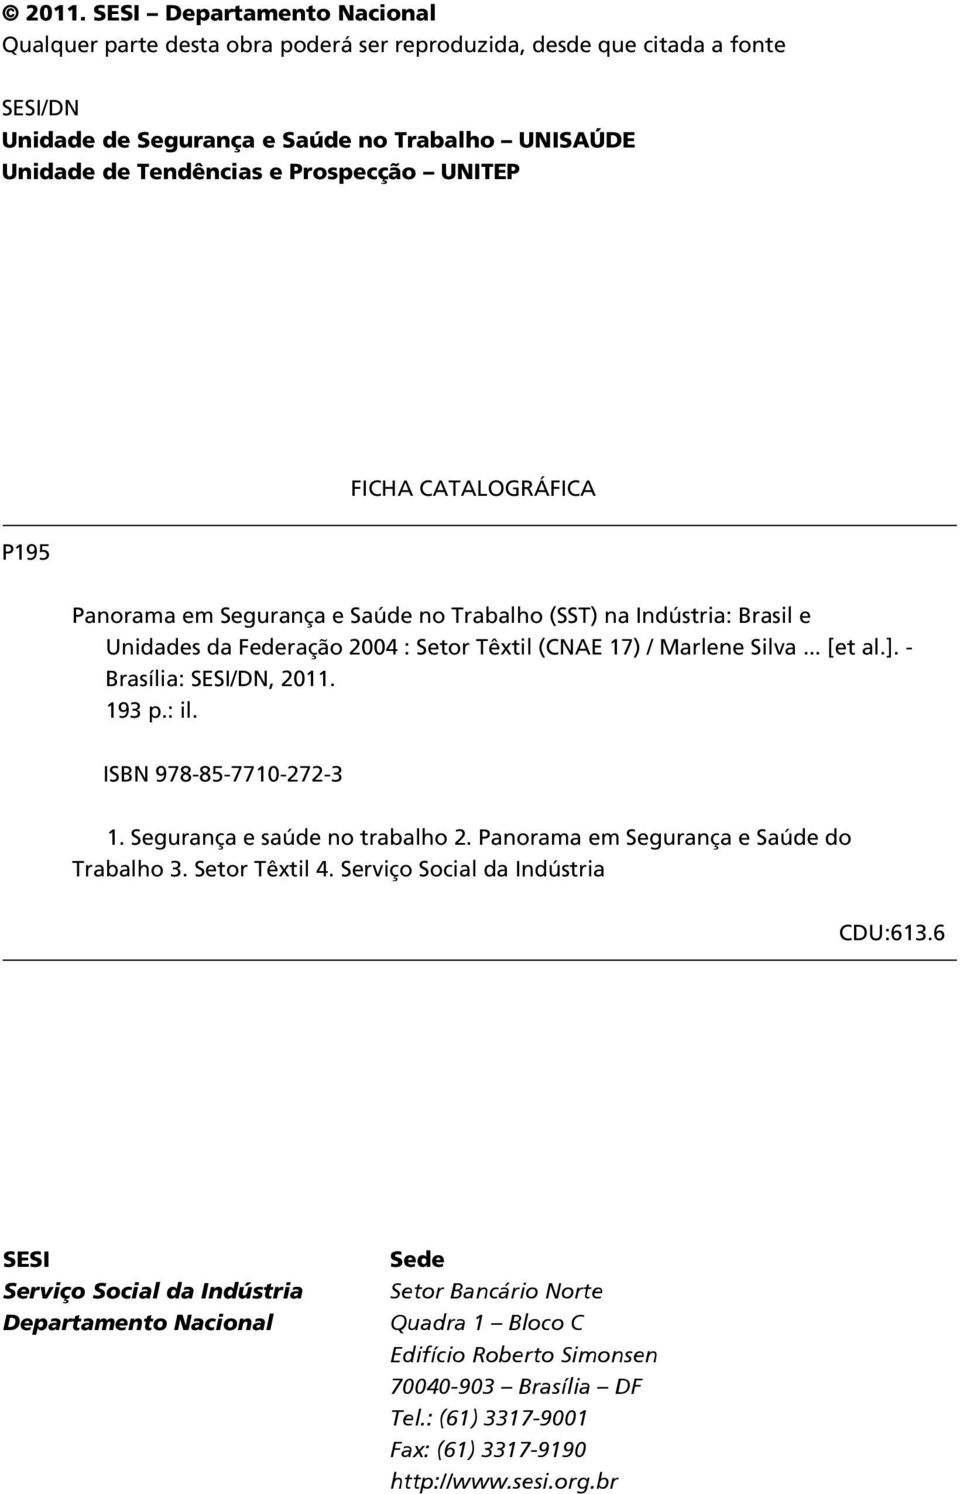 - Brasília: SESI/DN, 2011. 193 p.: il. ISBN 978-85-7710-272-3 1. Segurança e saúde no trabalho 2. Panorama em Segurança e Saúde do Trabalho 3. Setor Têxtil 4. Serviço Social da Indústria CDU:613.